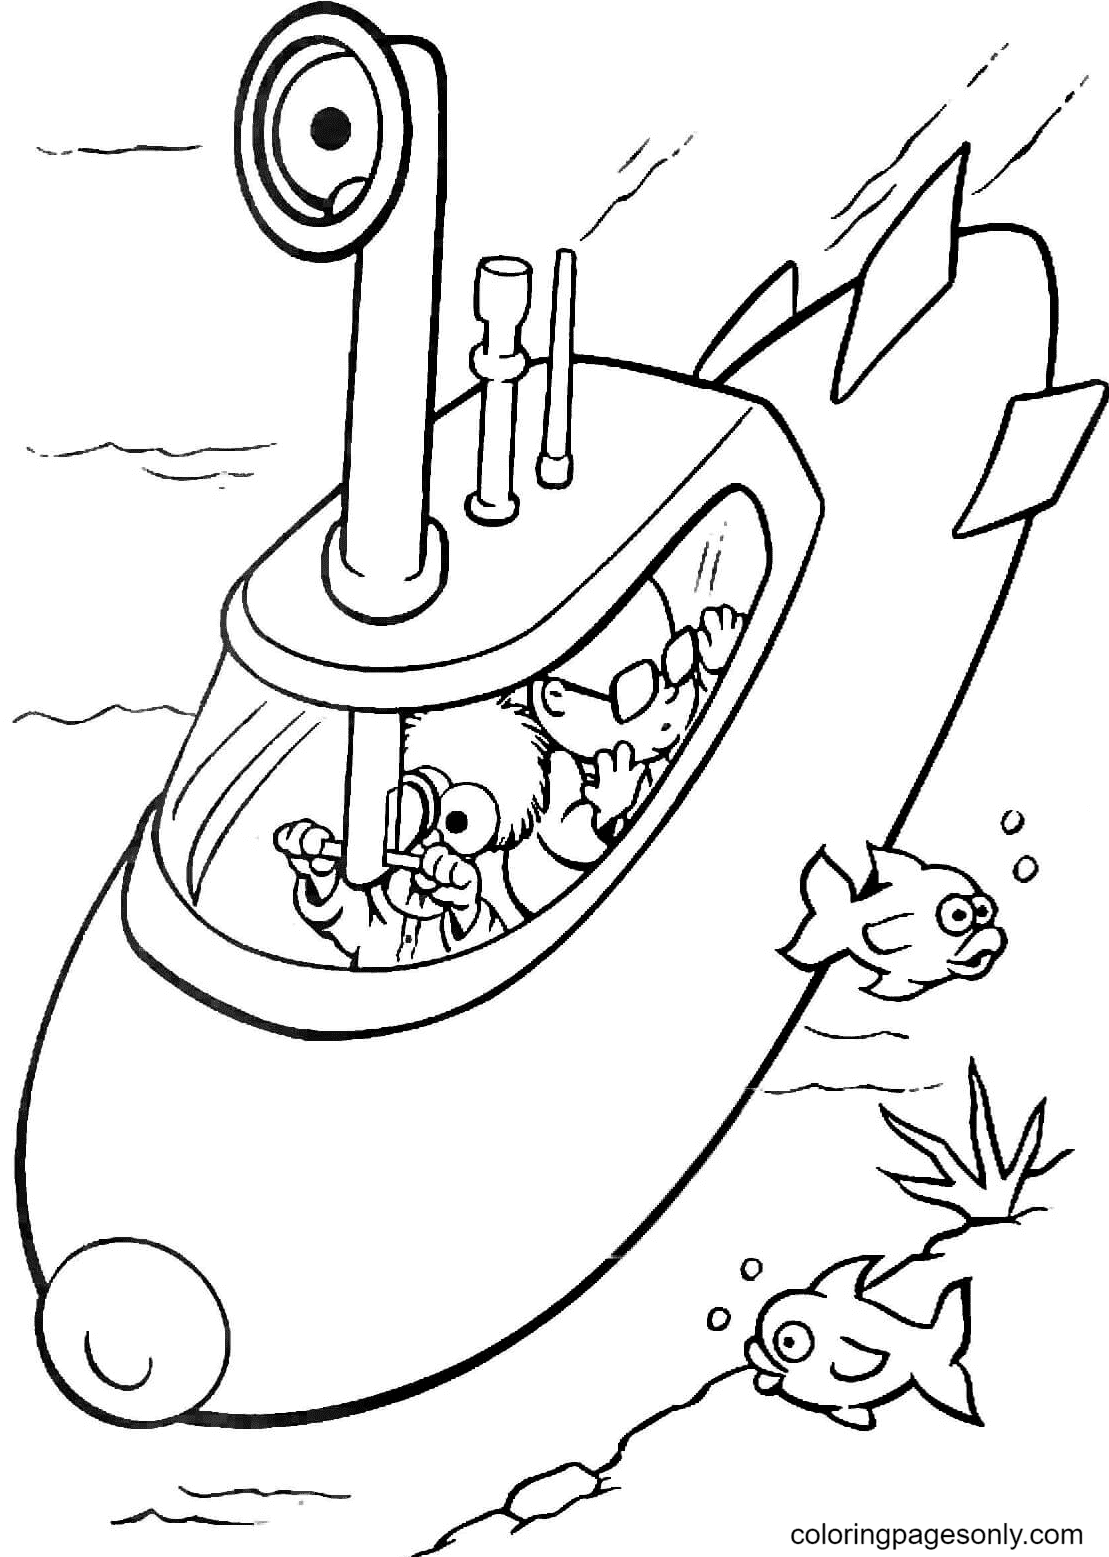 Beaker y Bunsen en el submarino de Muppet Babies